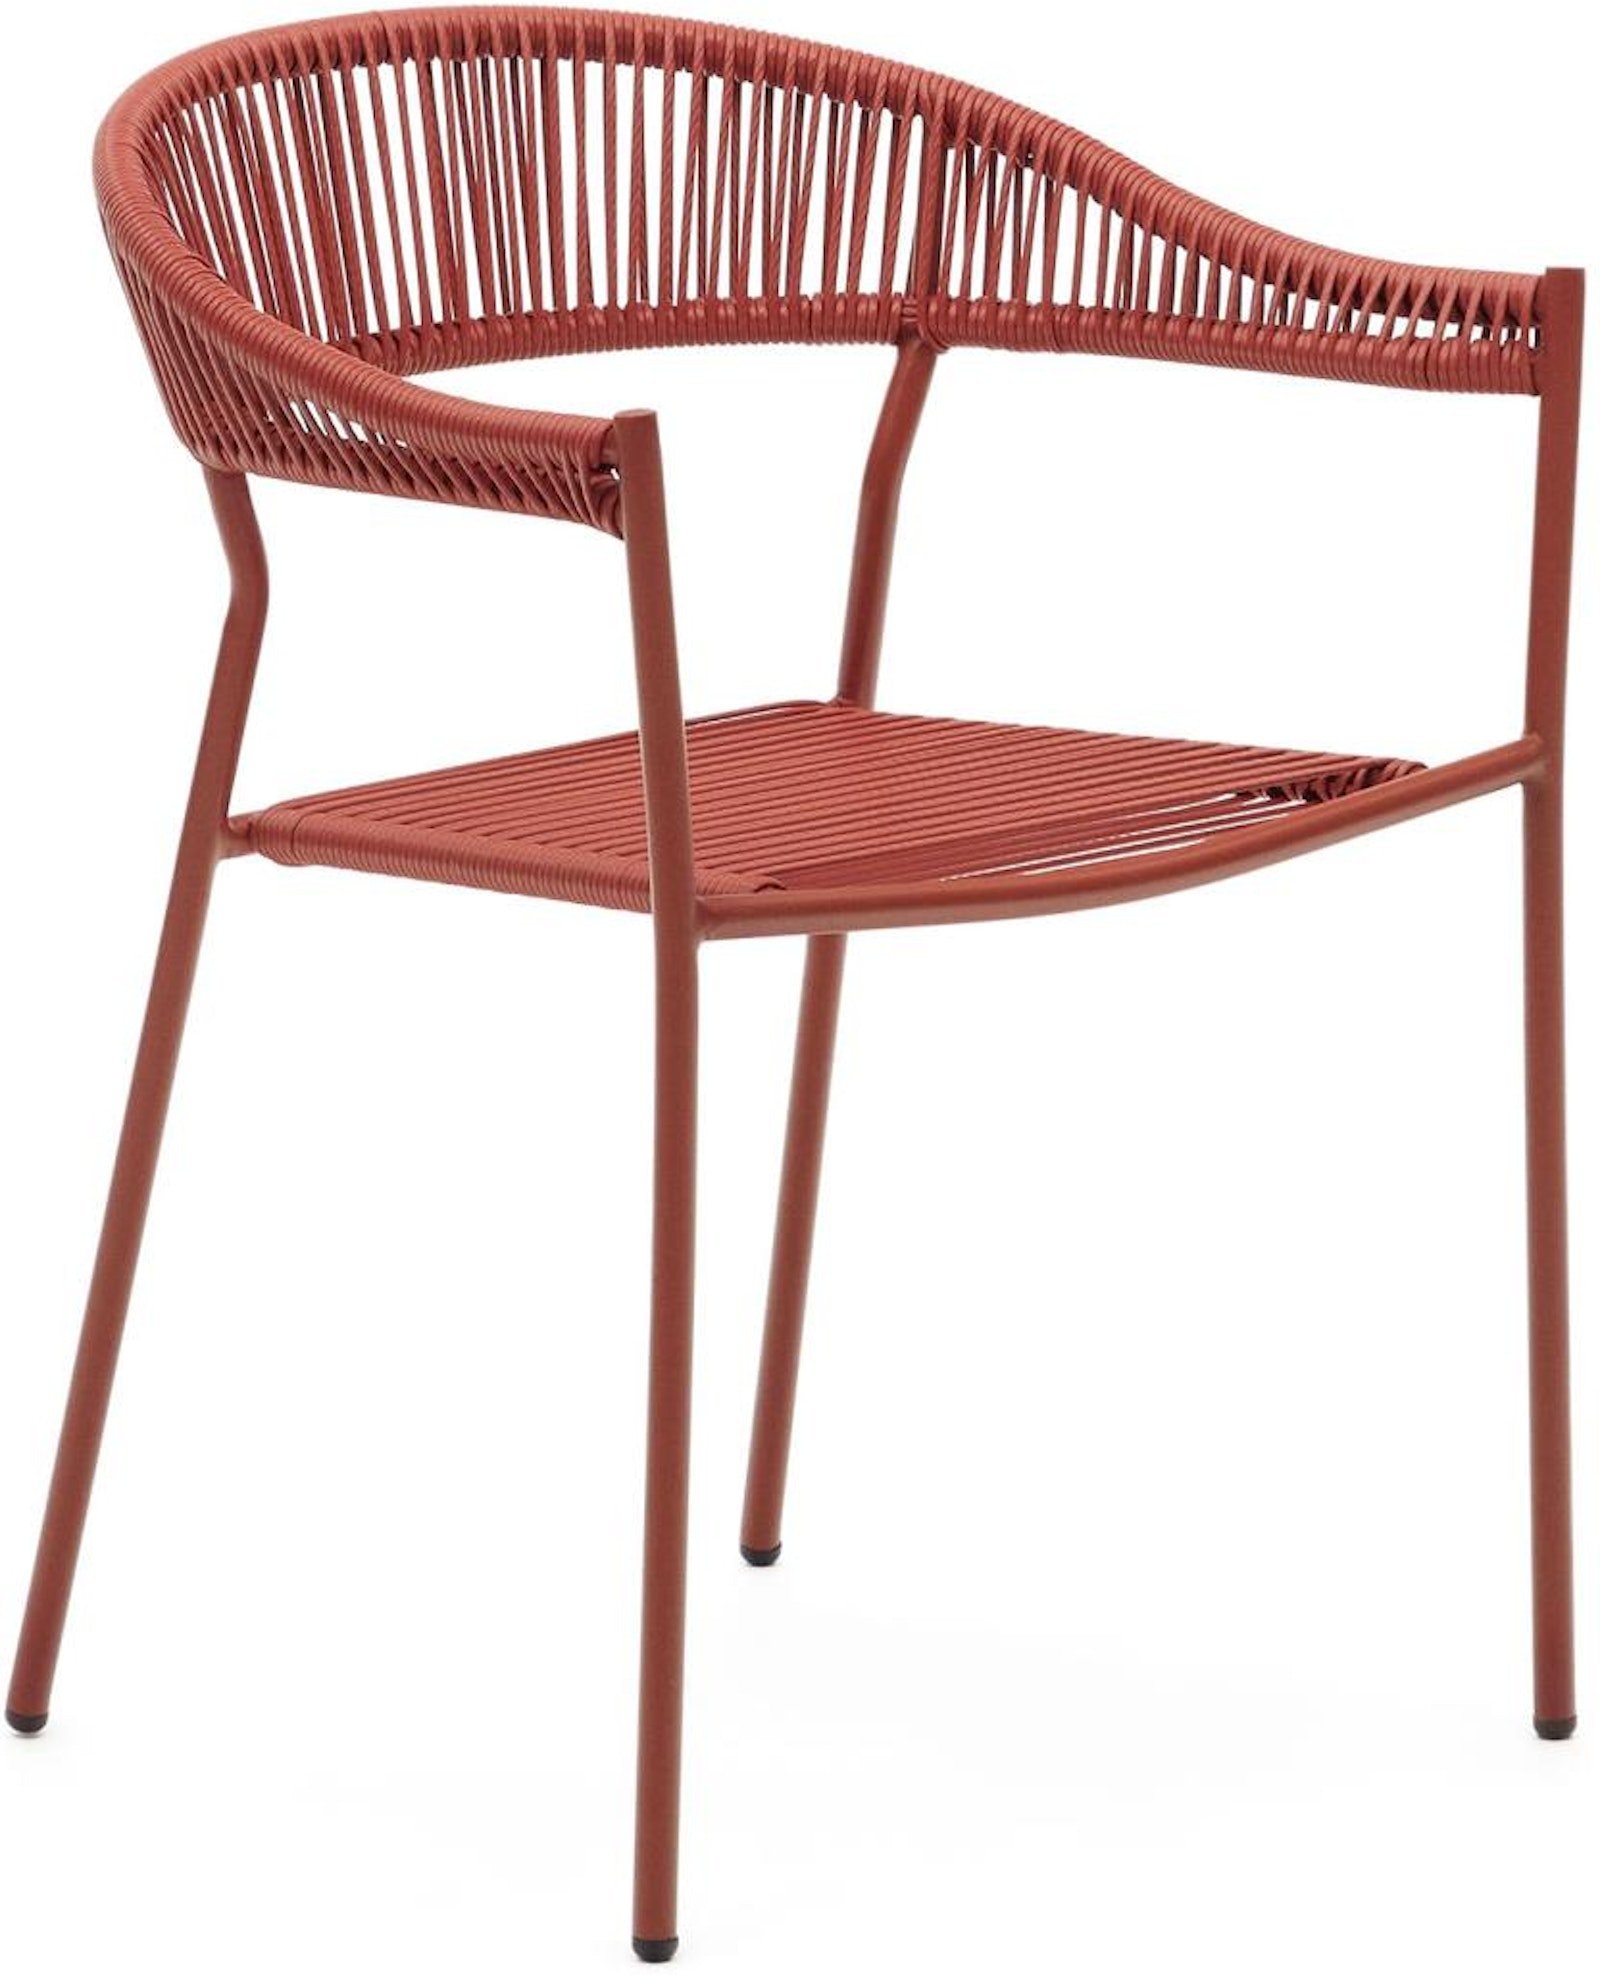 Futadera, Udendørs stol, moderne, nordisk by Laforma (H: 76 cm. x B: 57 cm. x L: 54 cm., Terracotta)